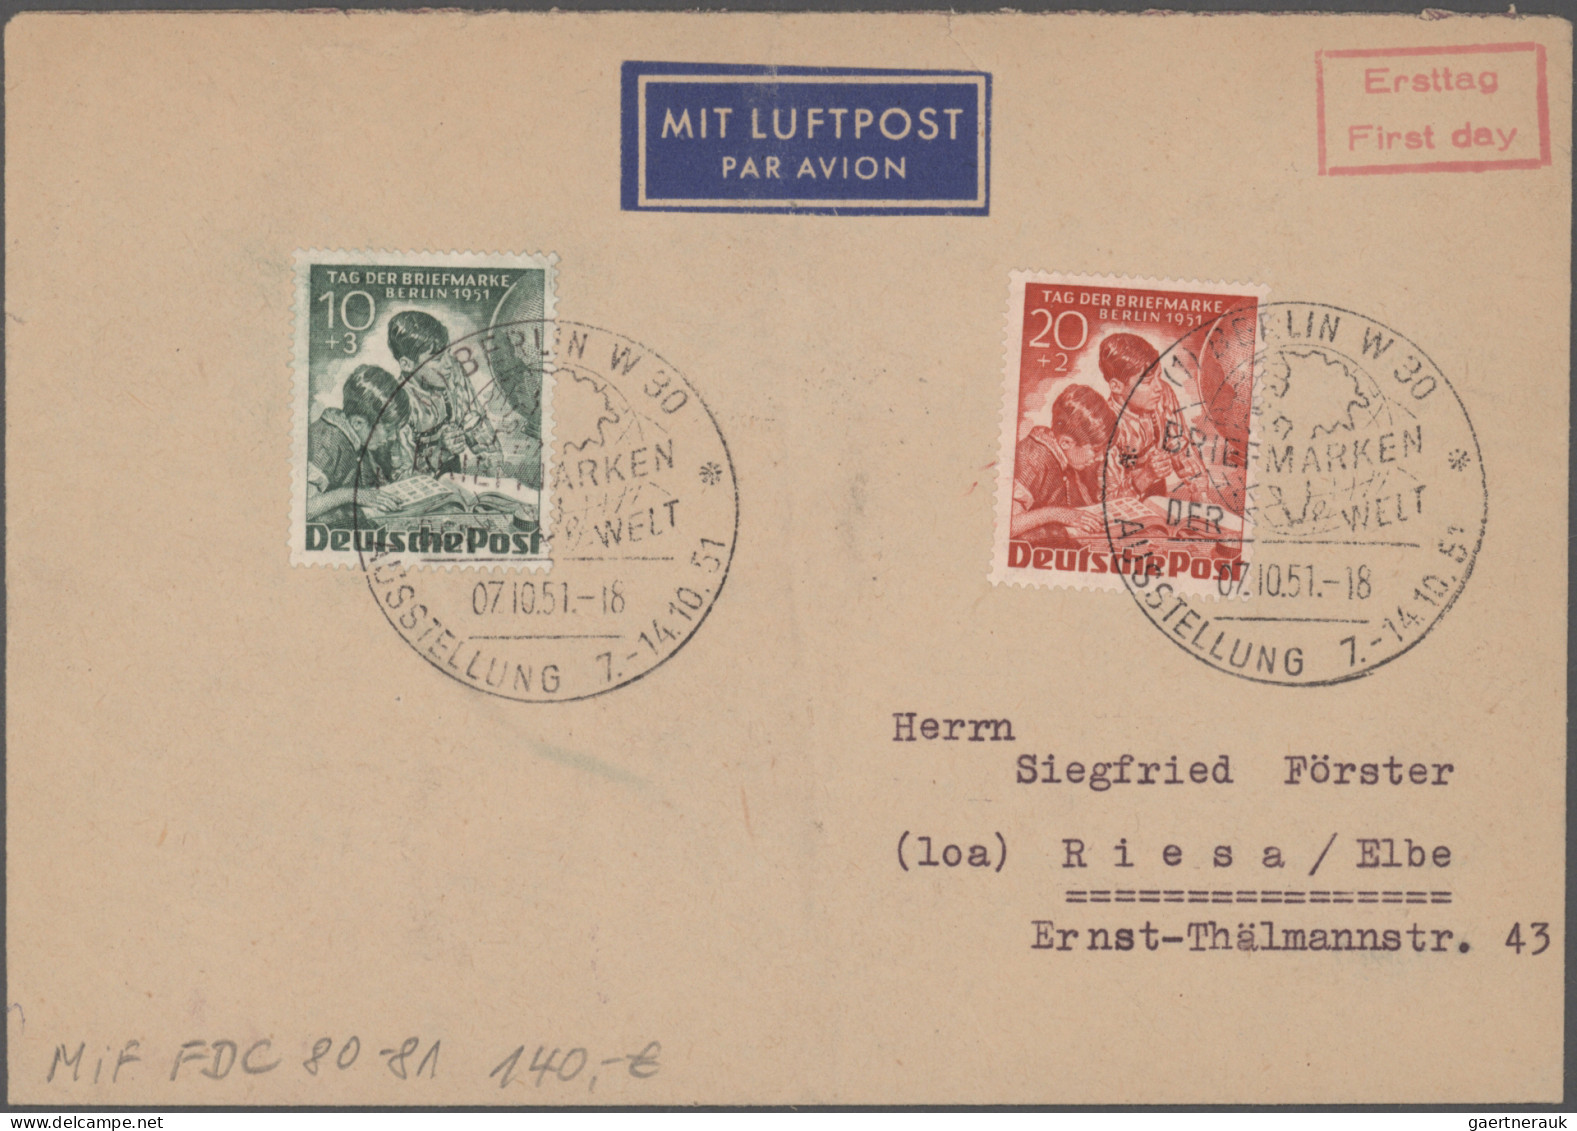 Berlin: 1948/1990, umfangreiche Belege-Sammlung sowie gestempelter Marken in sec